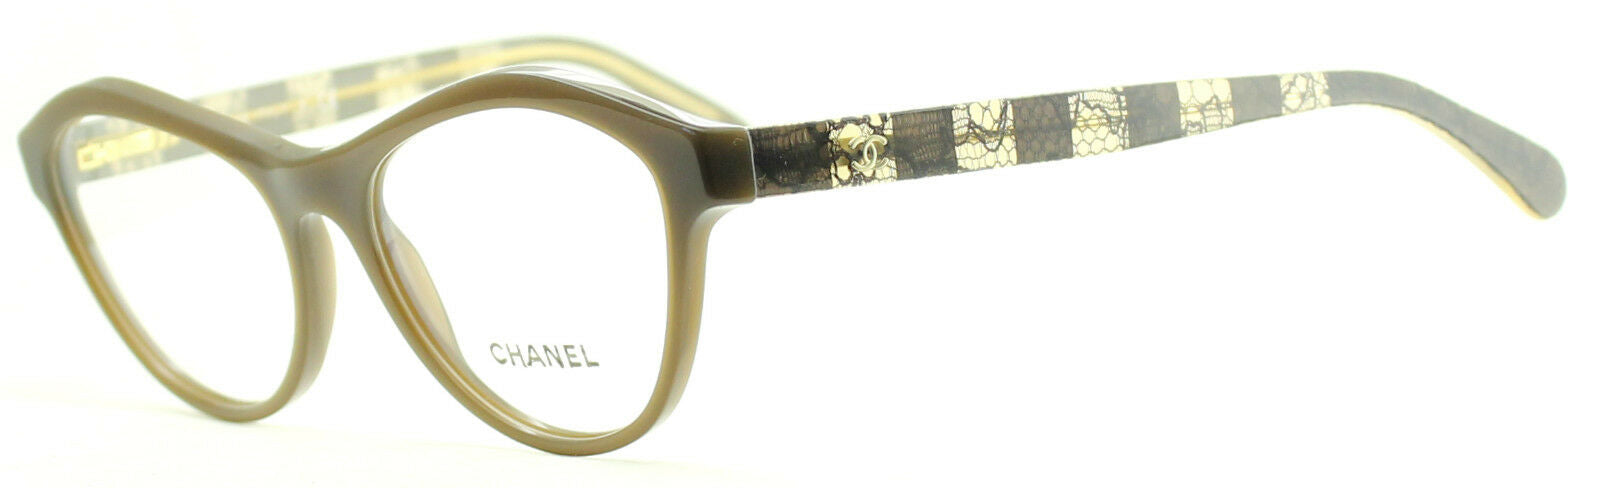 chanel reading glasses for women